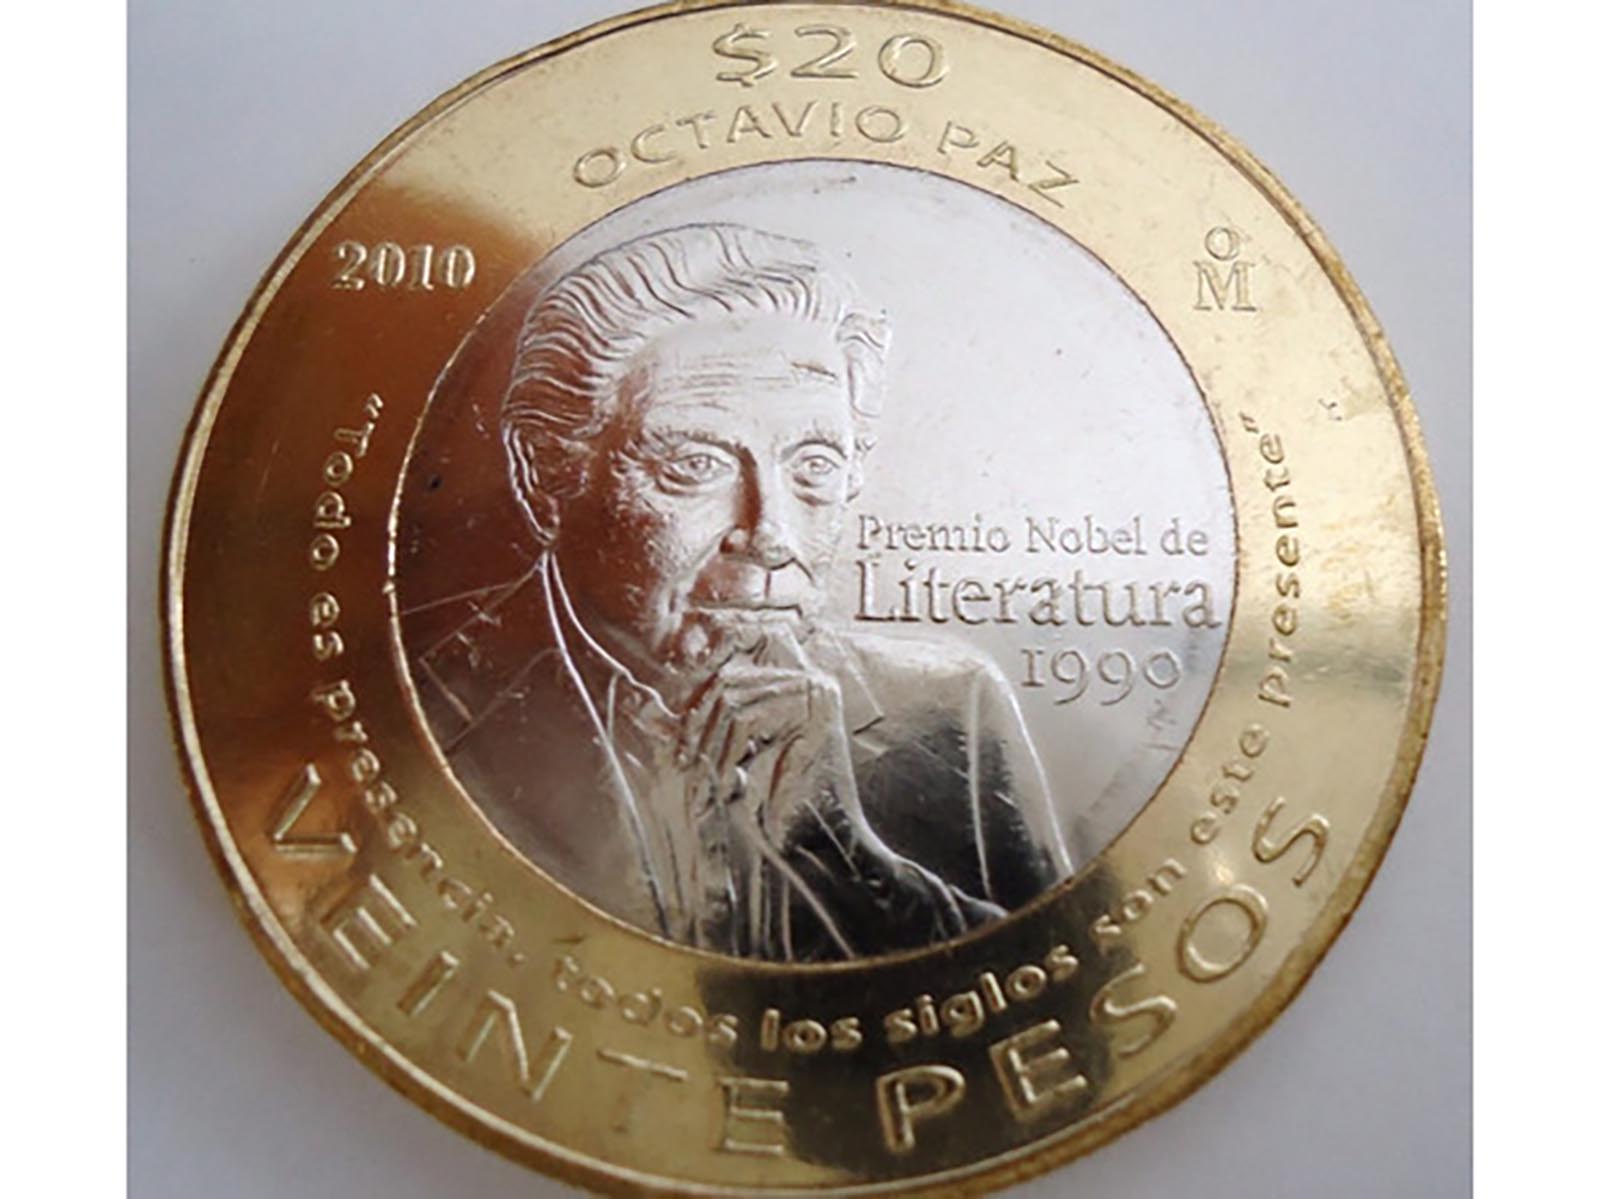 Octavio Paz causa sensación por las monedas de 20 pesos que lo conmemoran -  México Desconocido